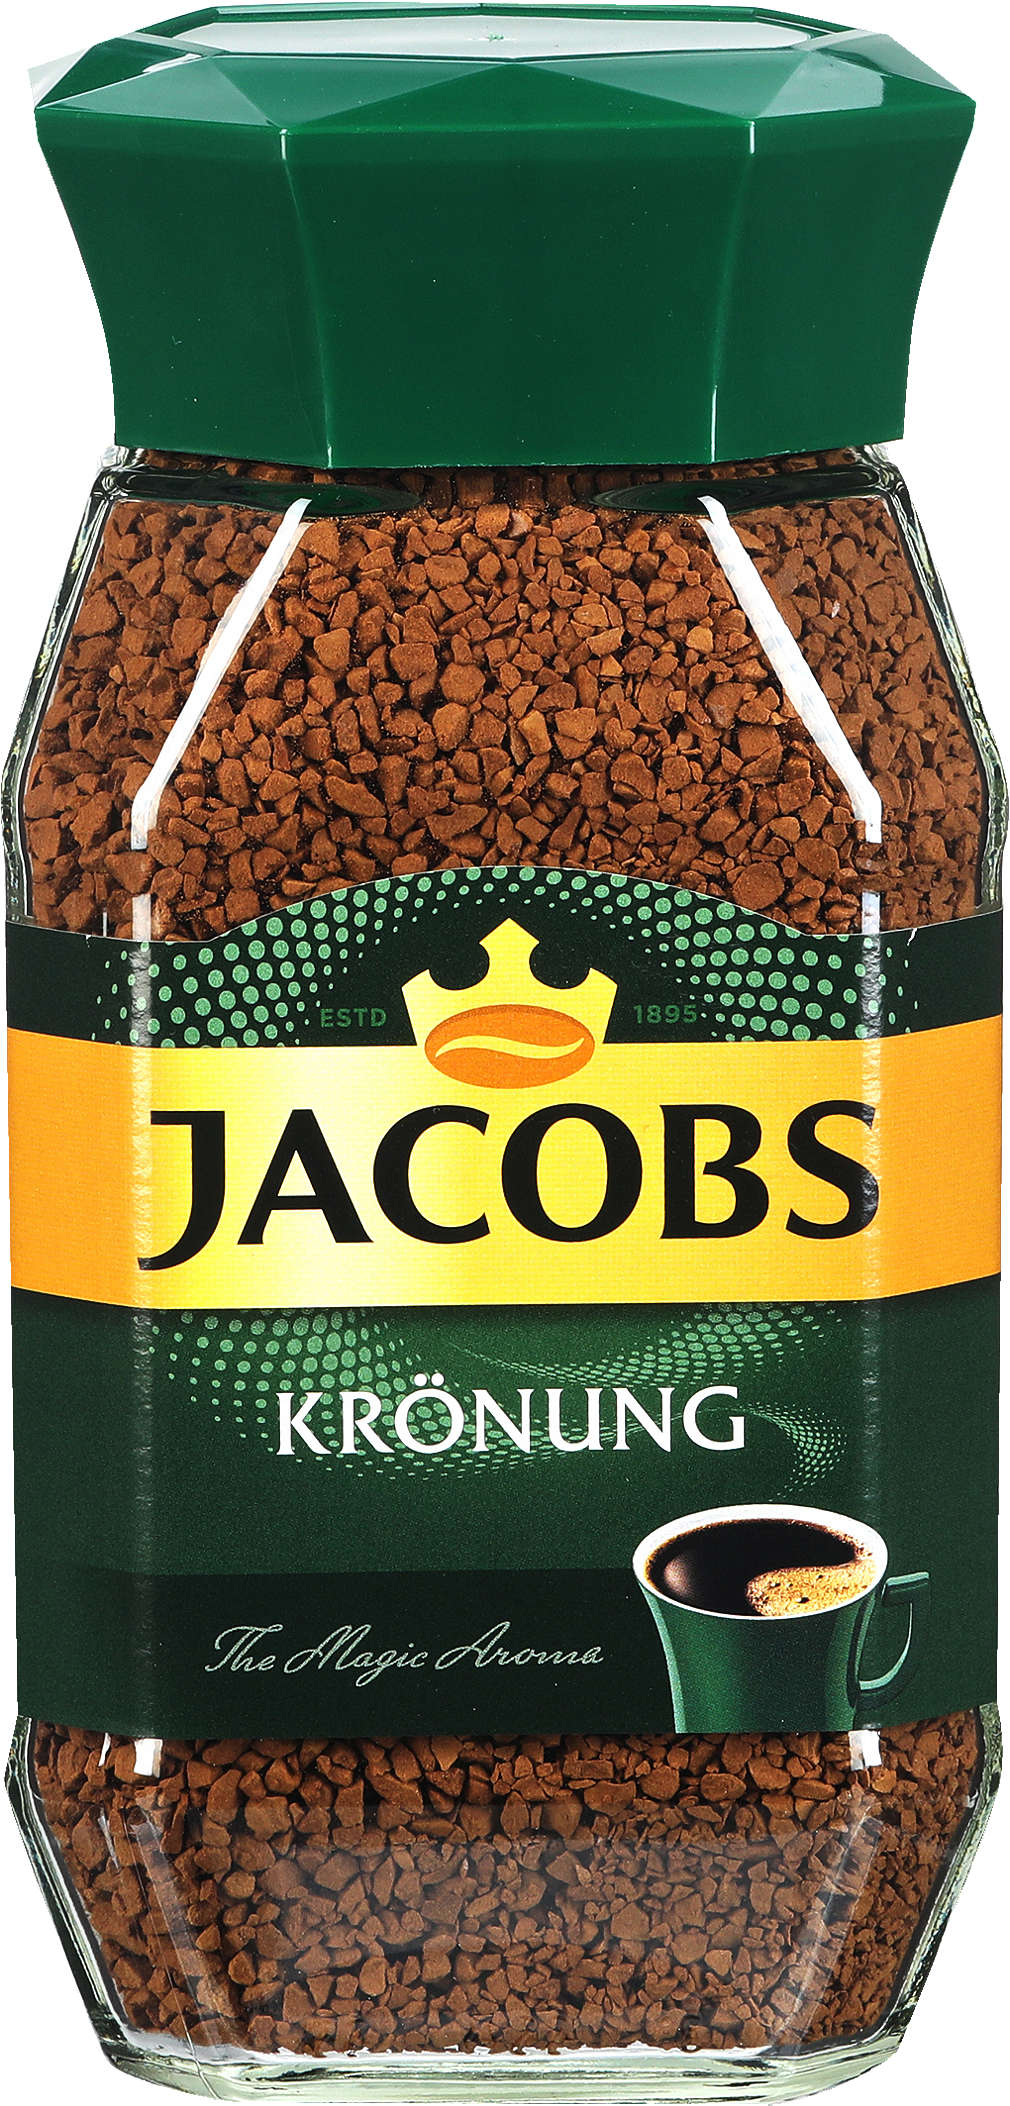 Zobrazit nabídku Jacobs Instantní káva